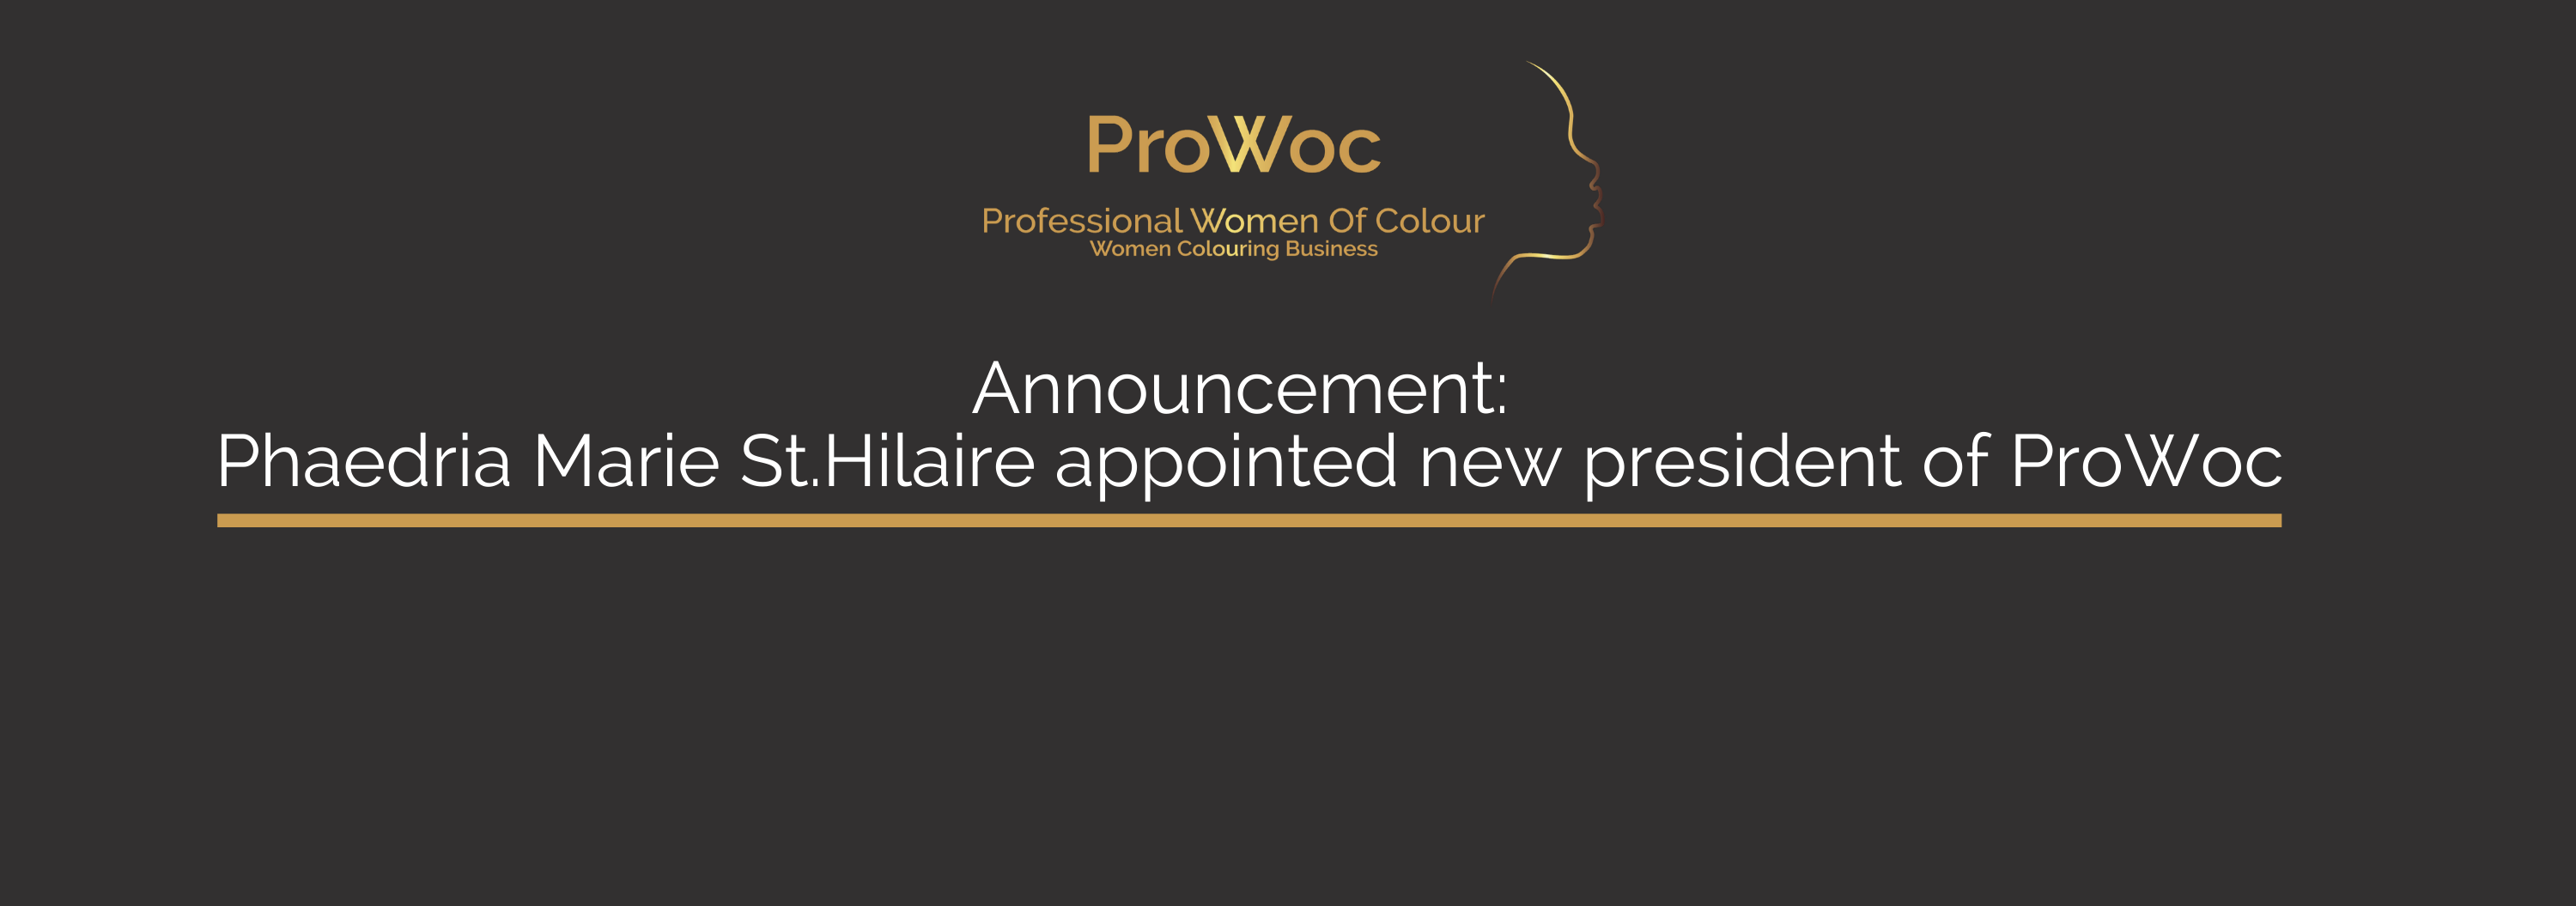 Professional Women of Colour Announcement - Phaedria